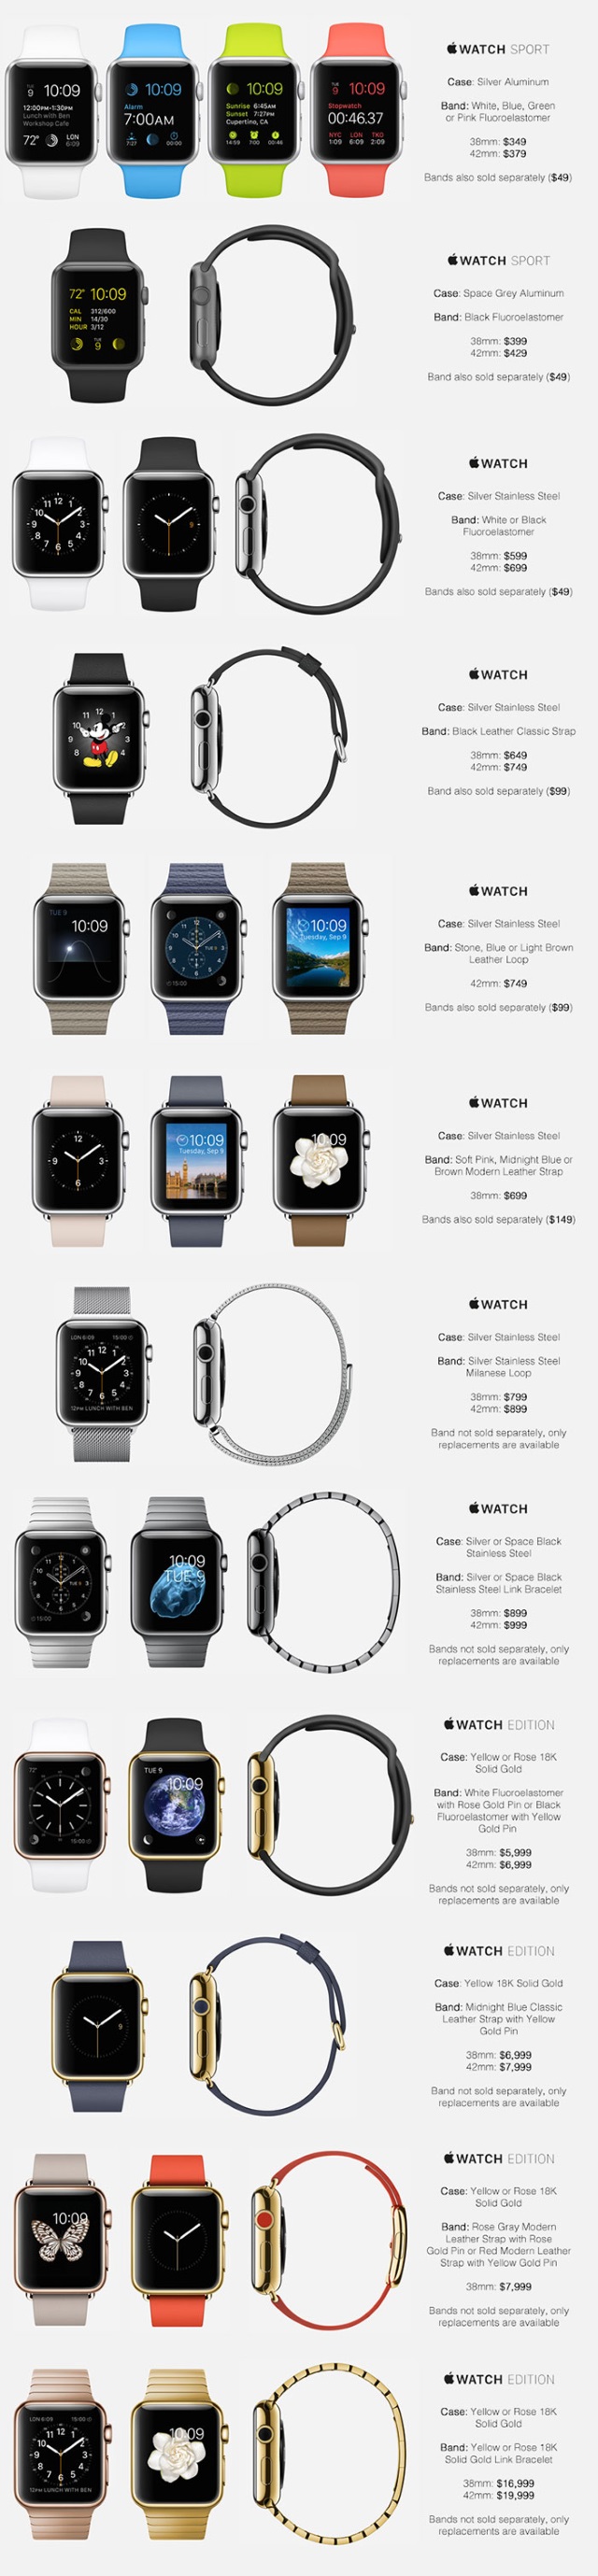 В Сети опубликован прайс-лист на все модели Apple Watch